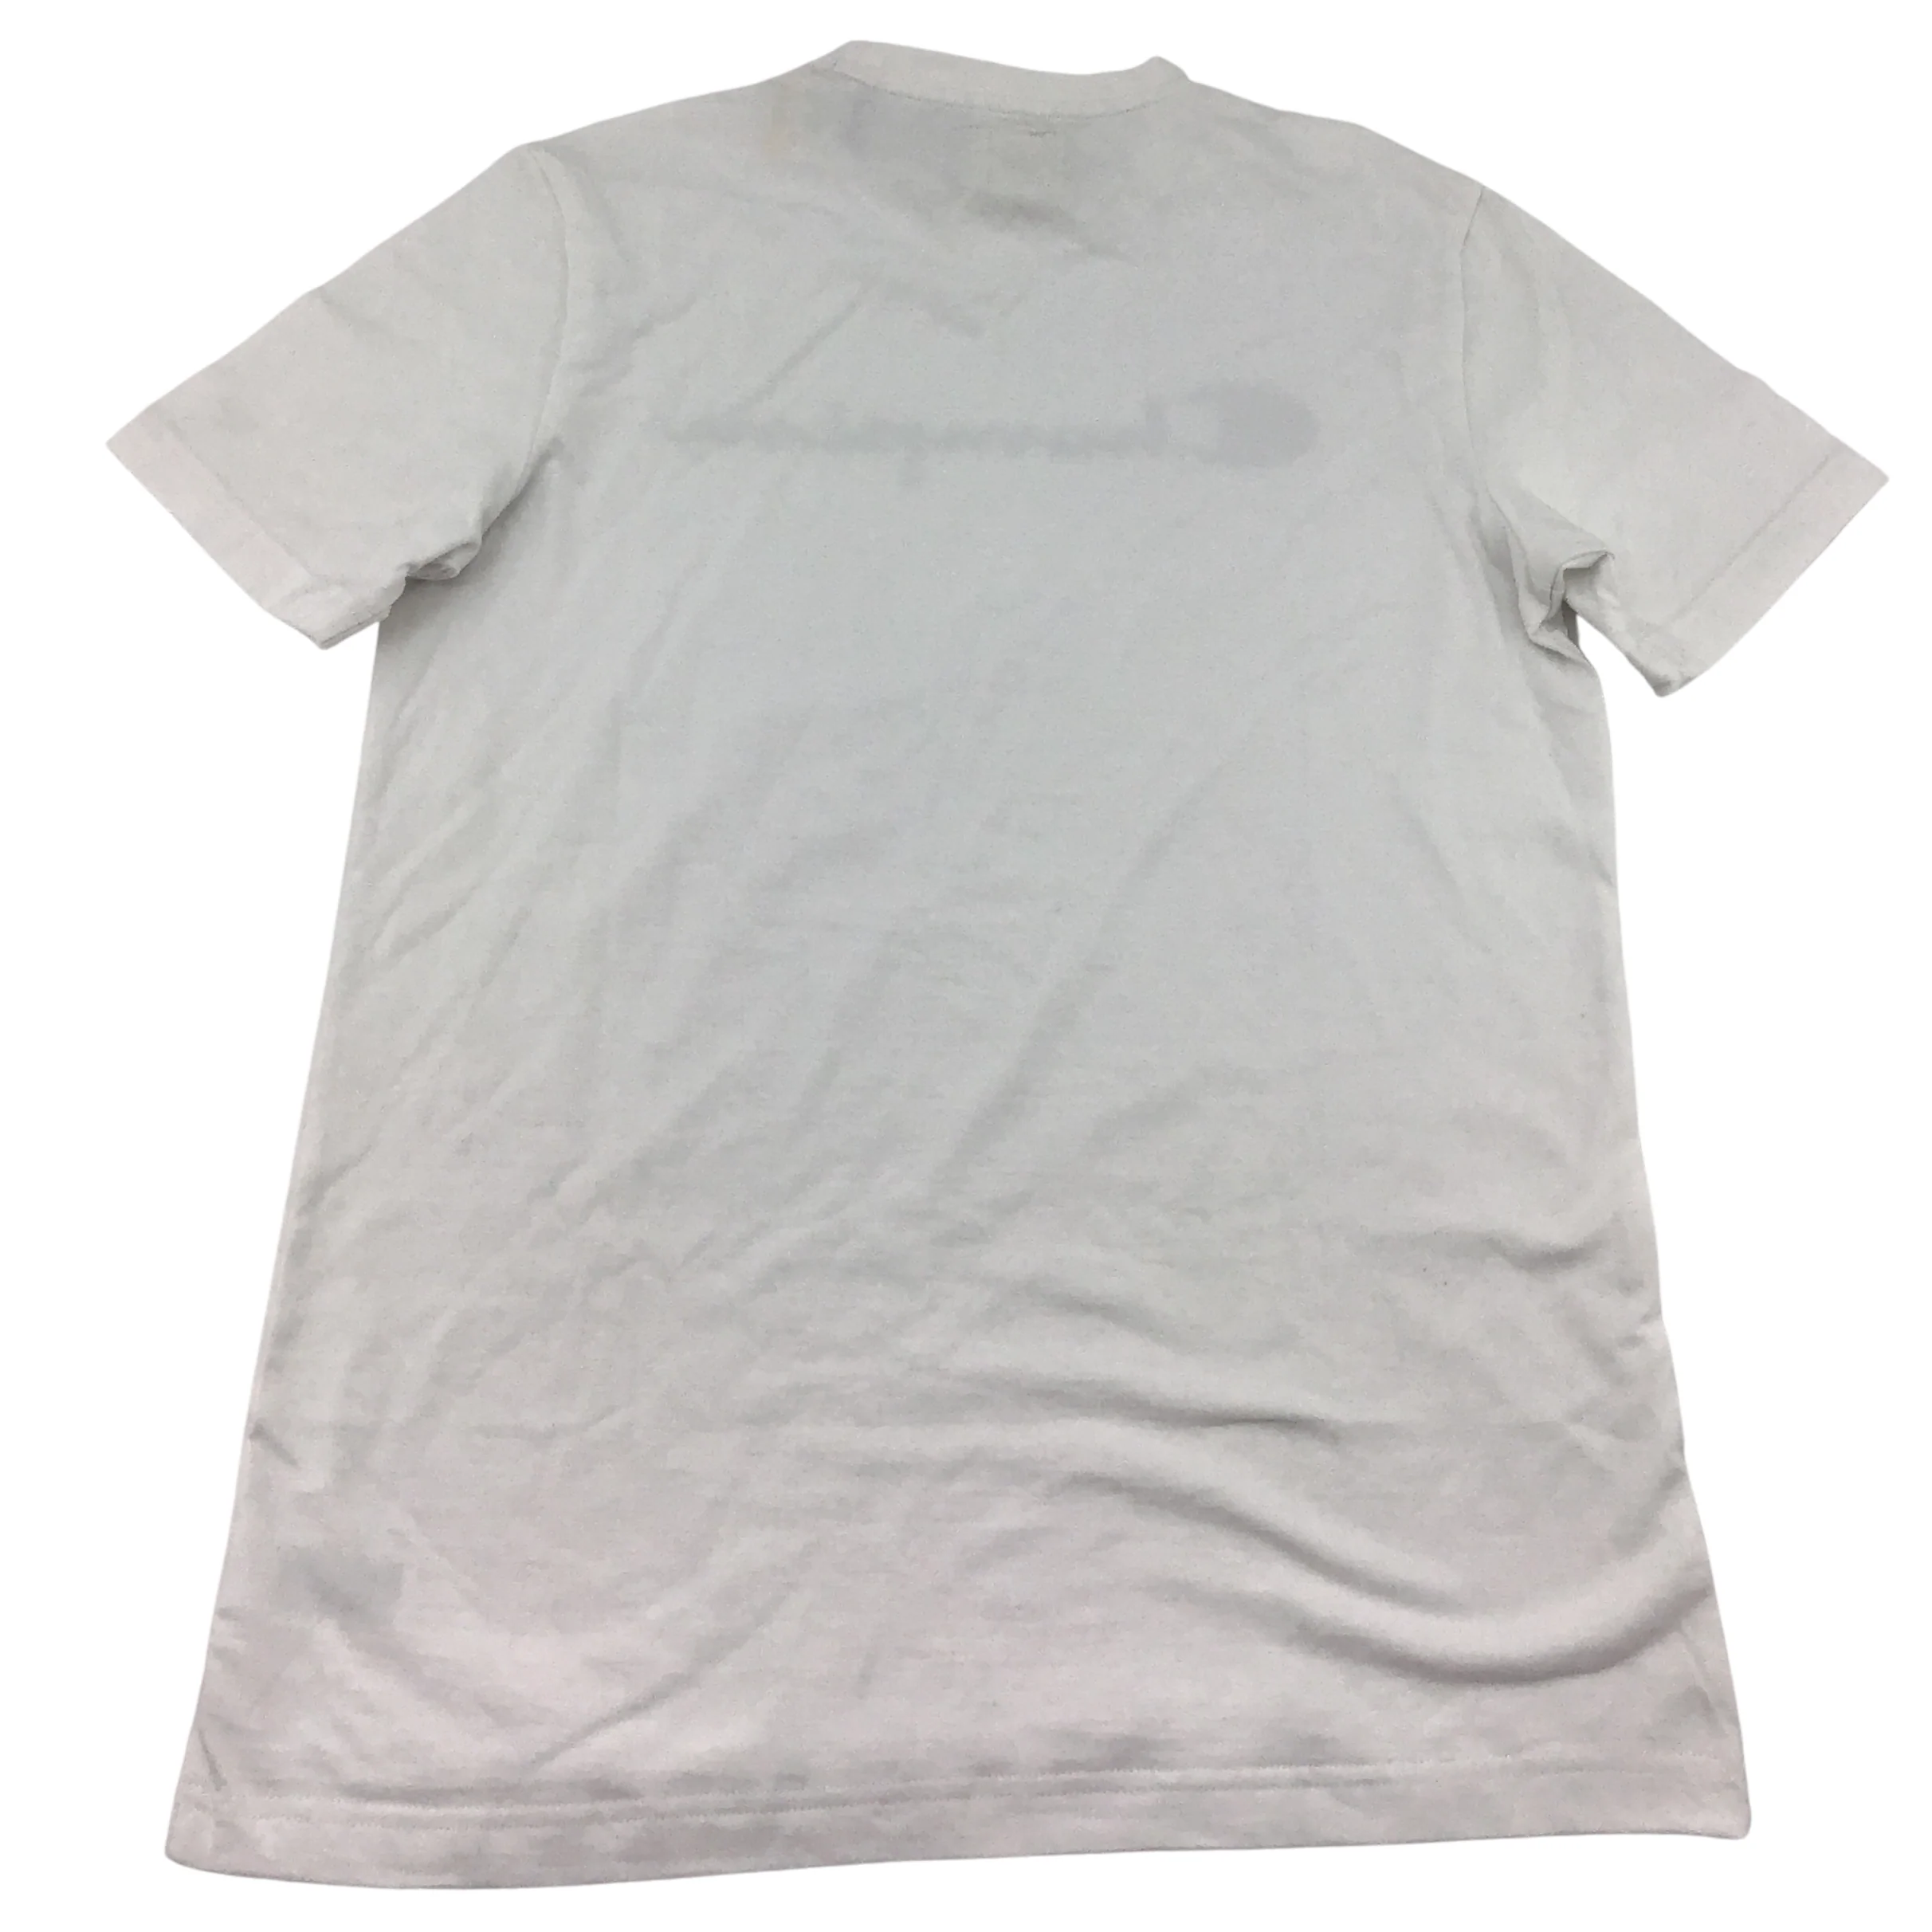 Champion Men's T-shirt:White/ Small/ Crew neck